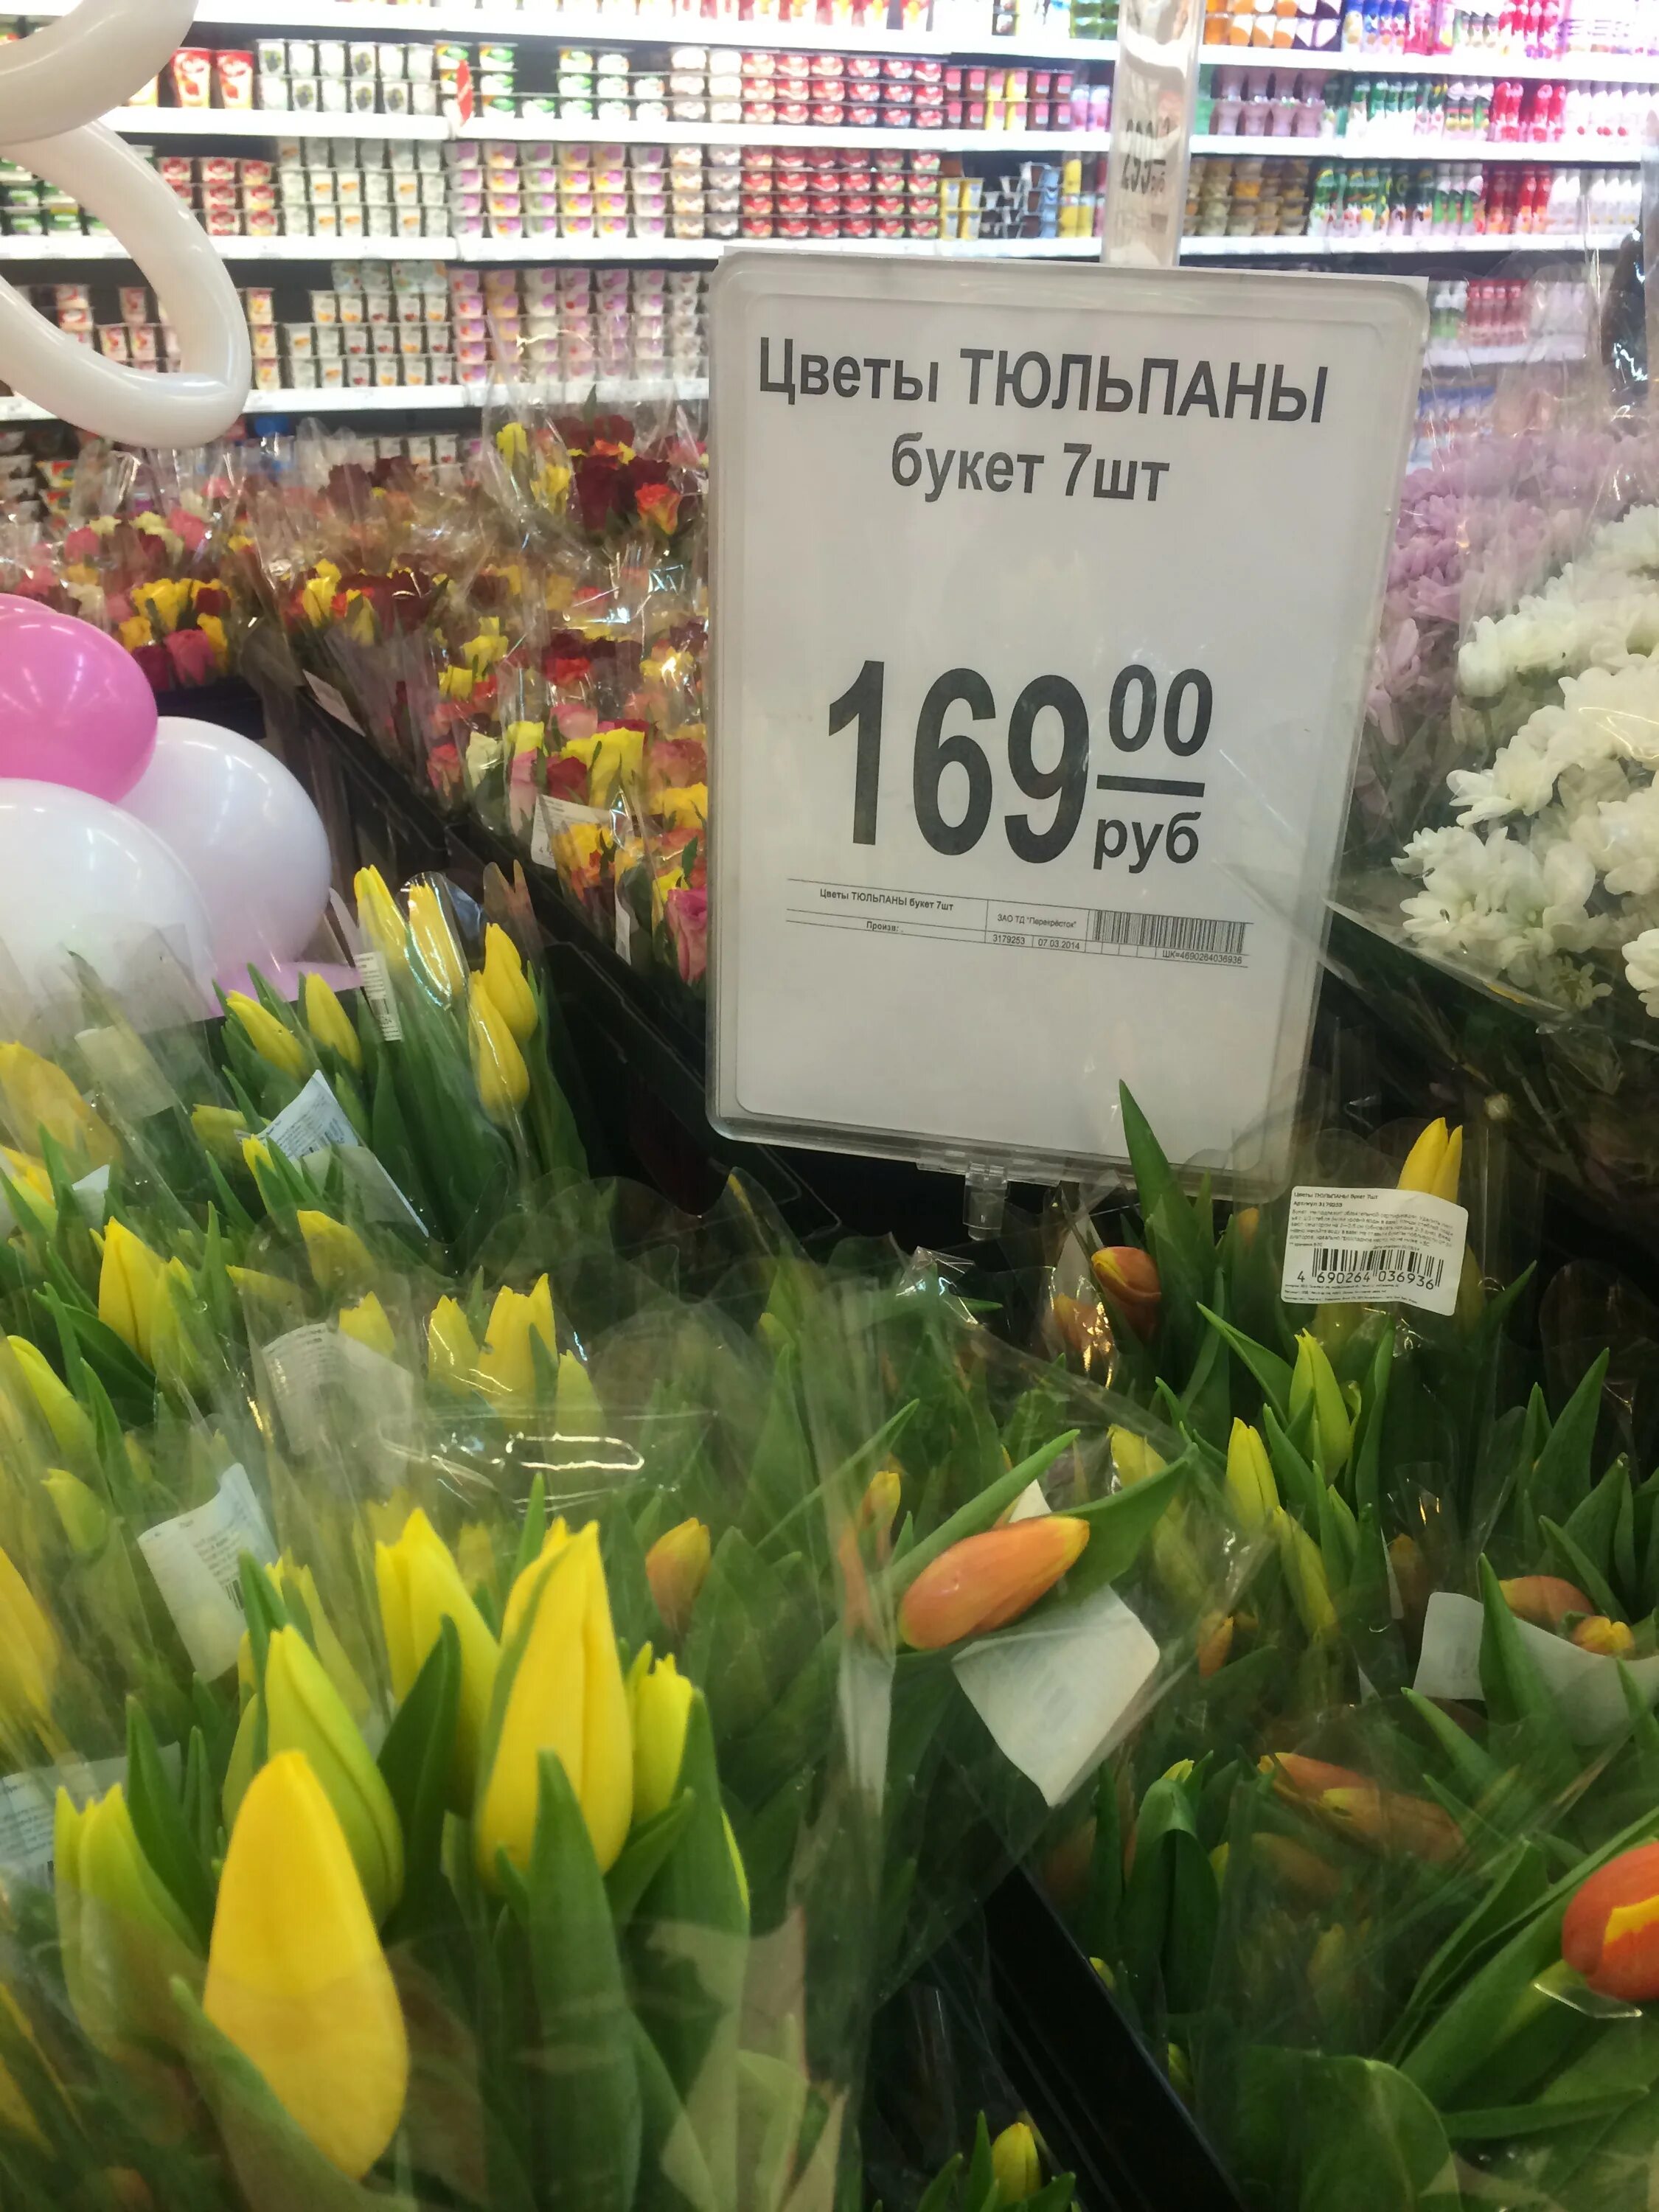 Тюльпаны в цветочном магазине. Ценники для цветочного магазина. Тюльпаны в супермаркетах. Цветы в супермаркете.